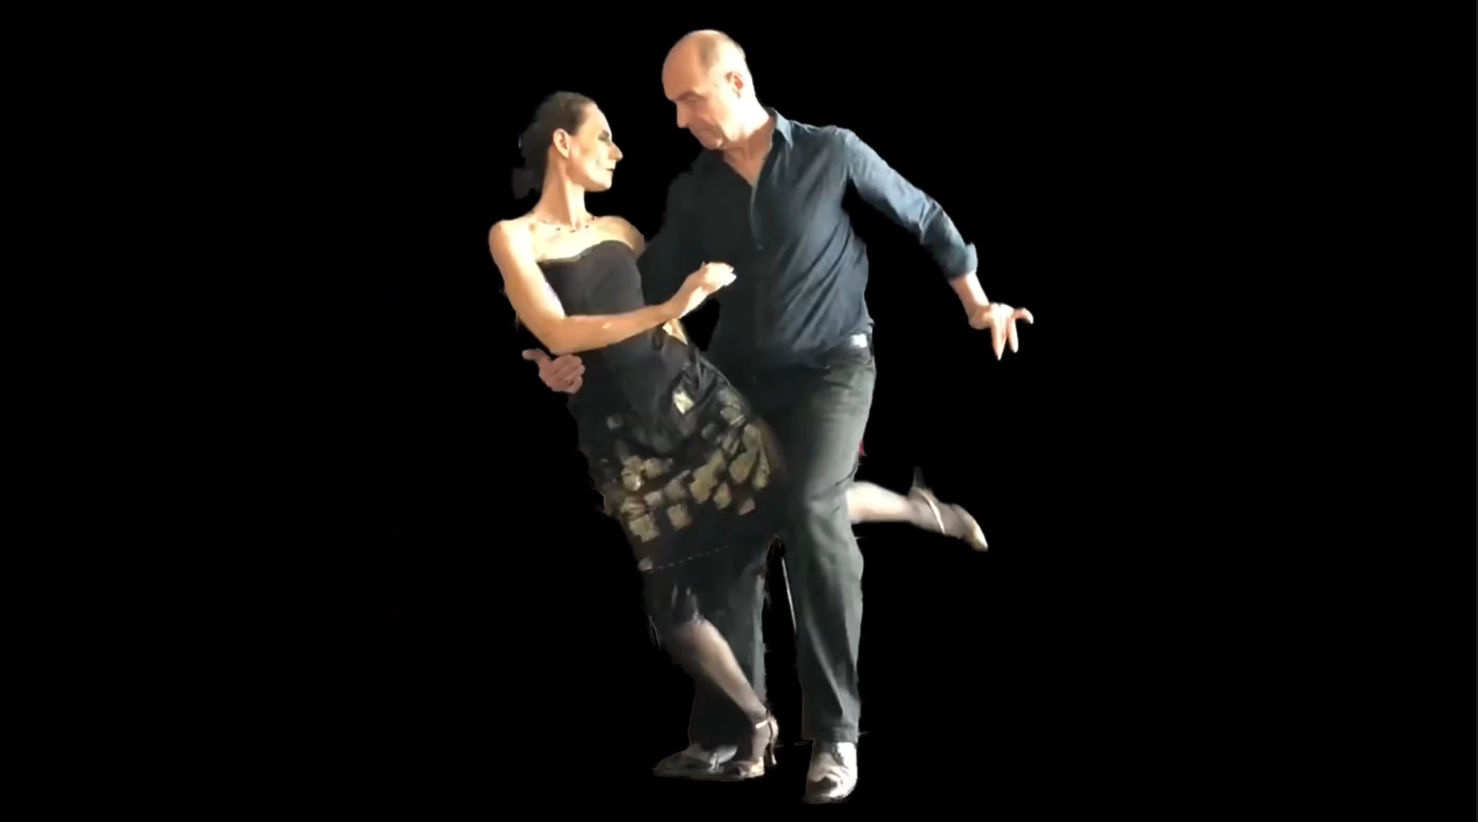 Du betrachtest gerade Tango Argentino: Die Kunst der elastischen Bewegung